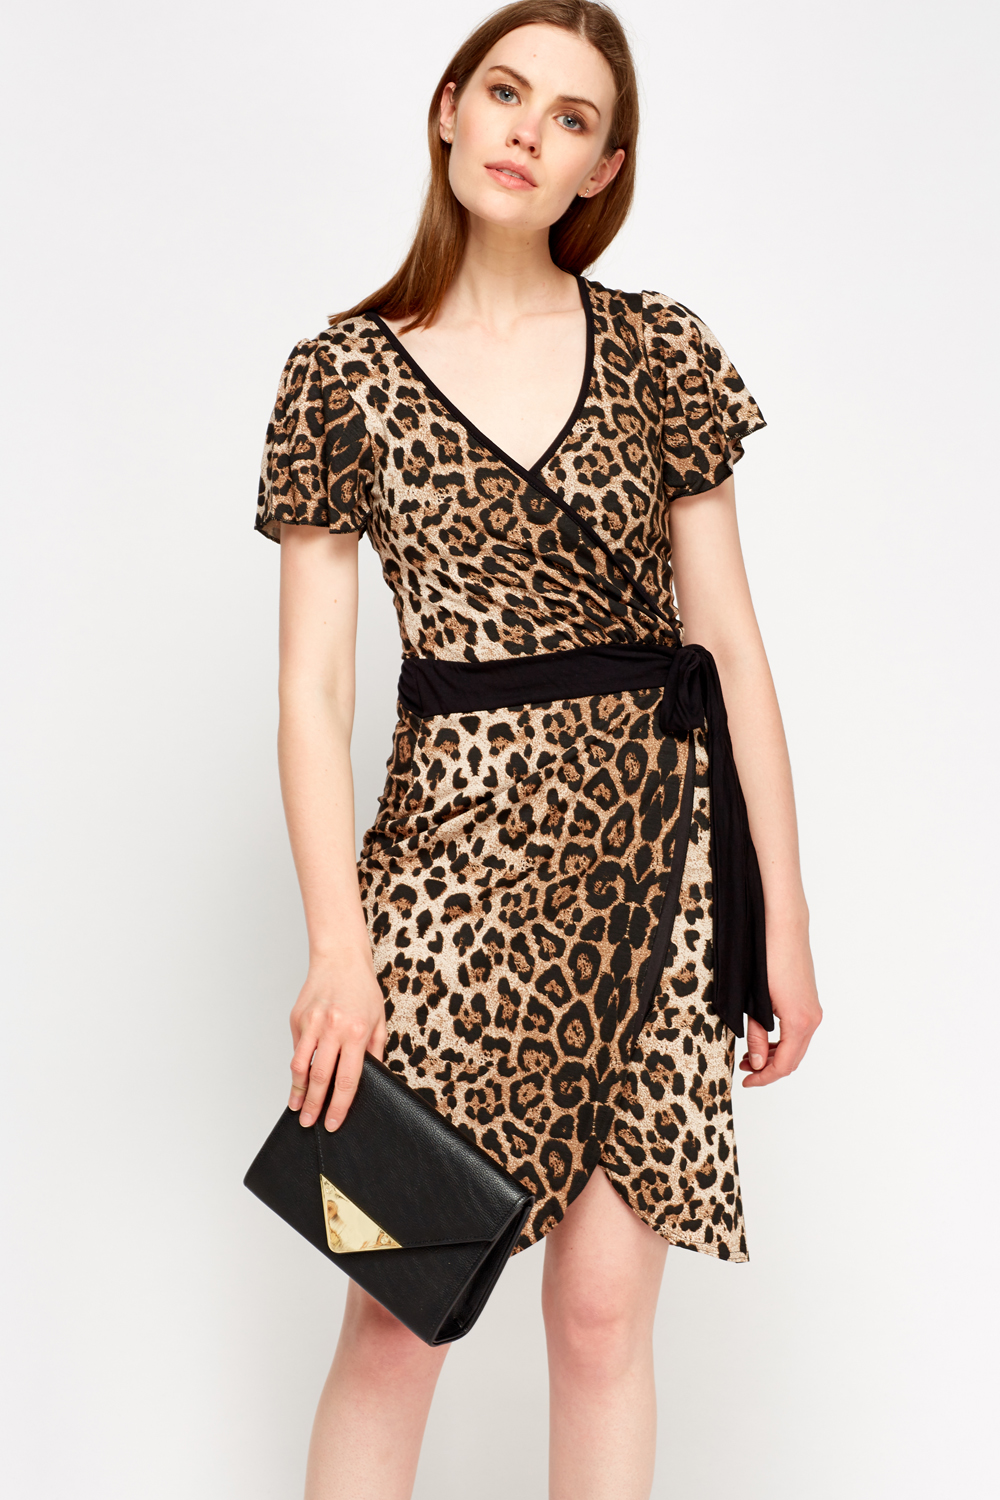 Leopard Print Wrap Dress - Just $7